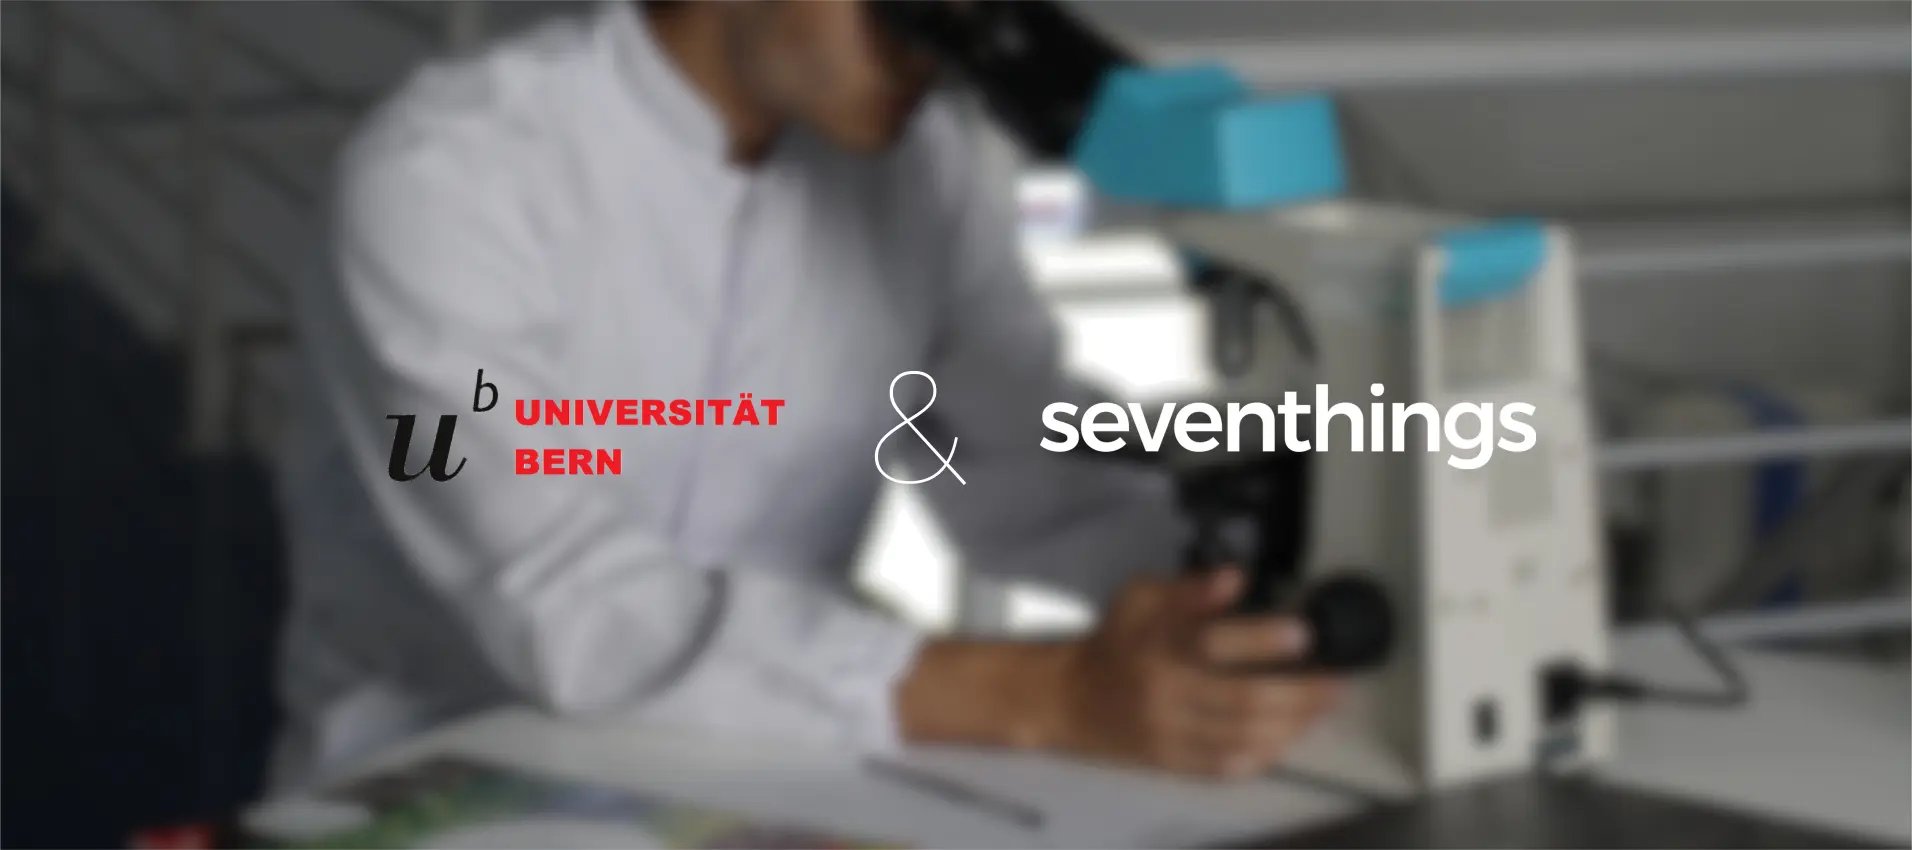 Universität Bern und seventhings